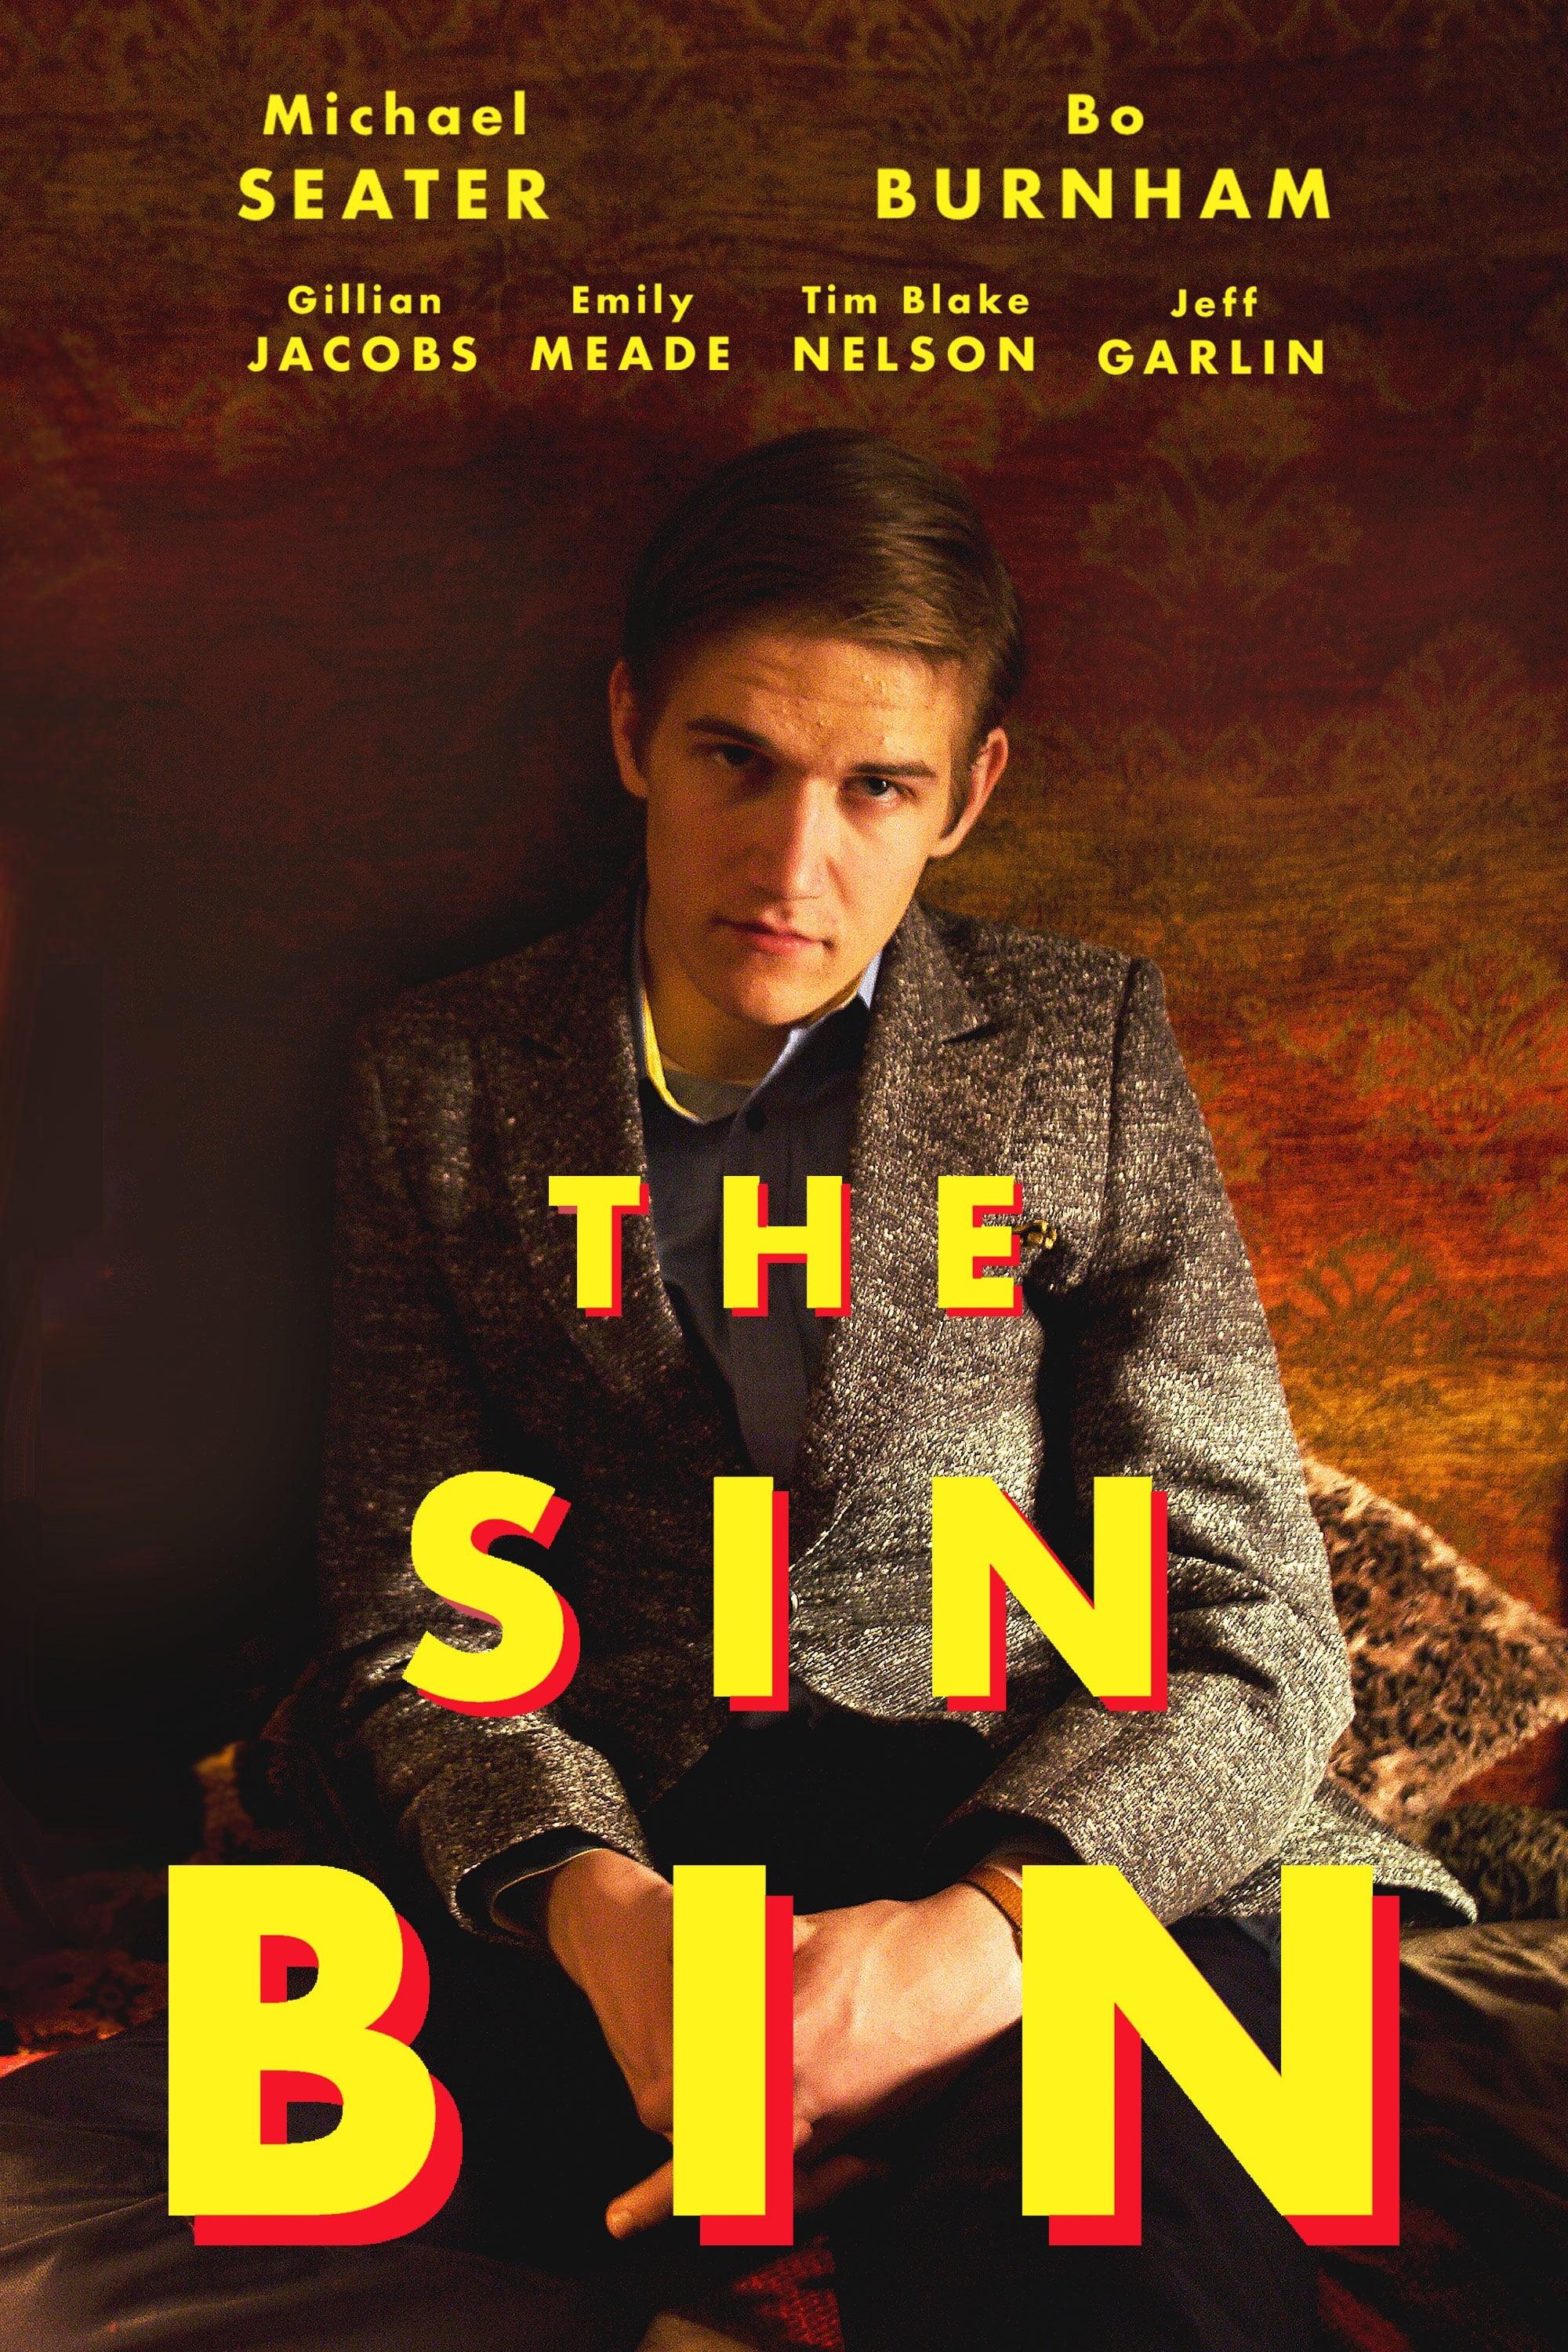 Adventures in the Sin Bin poster